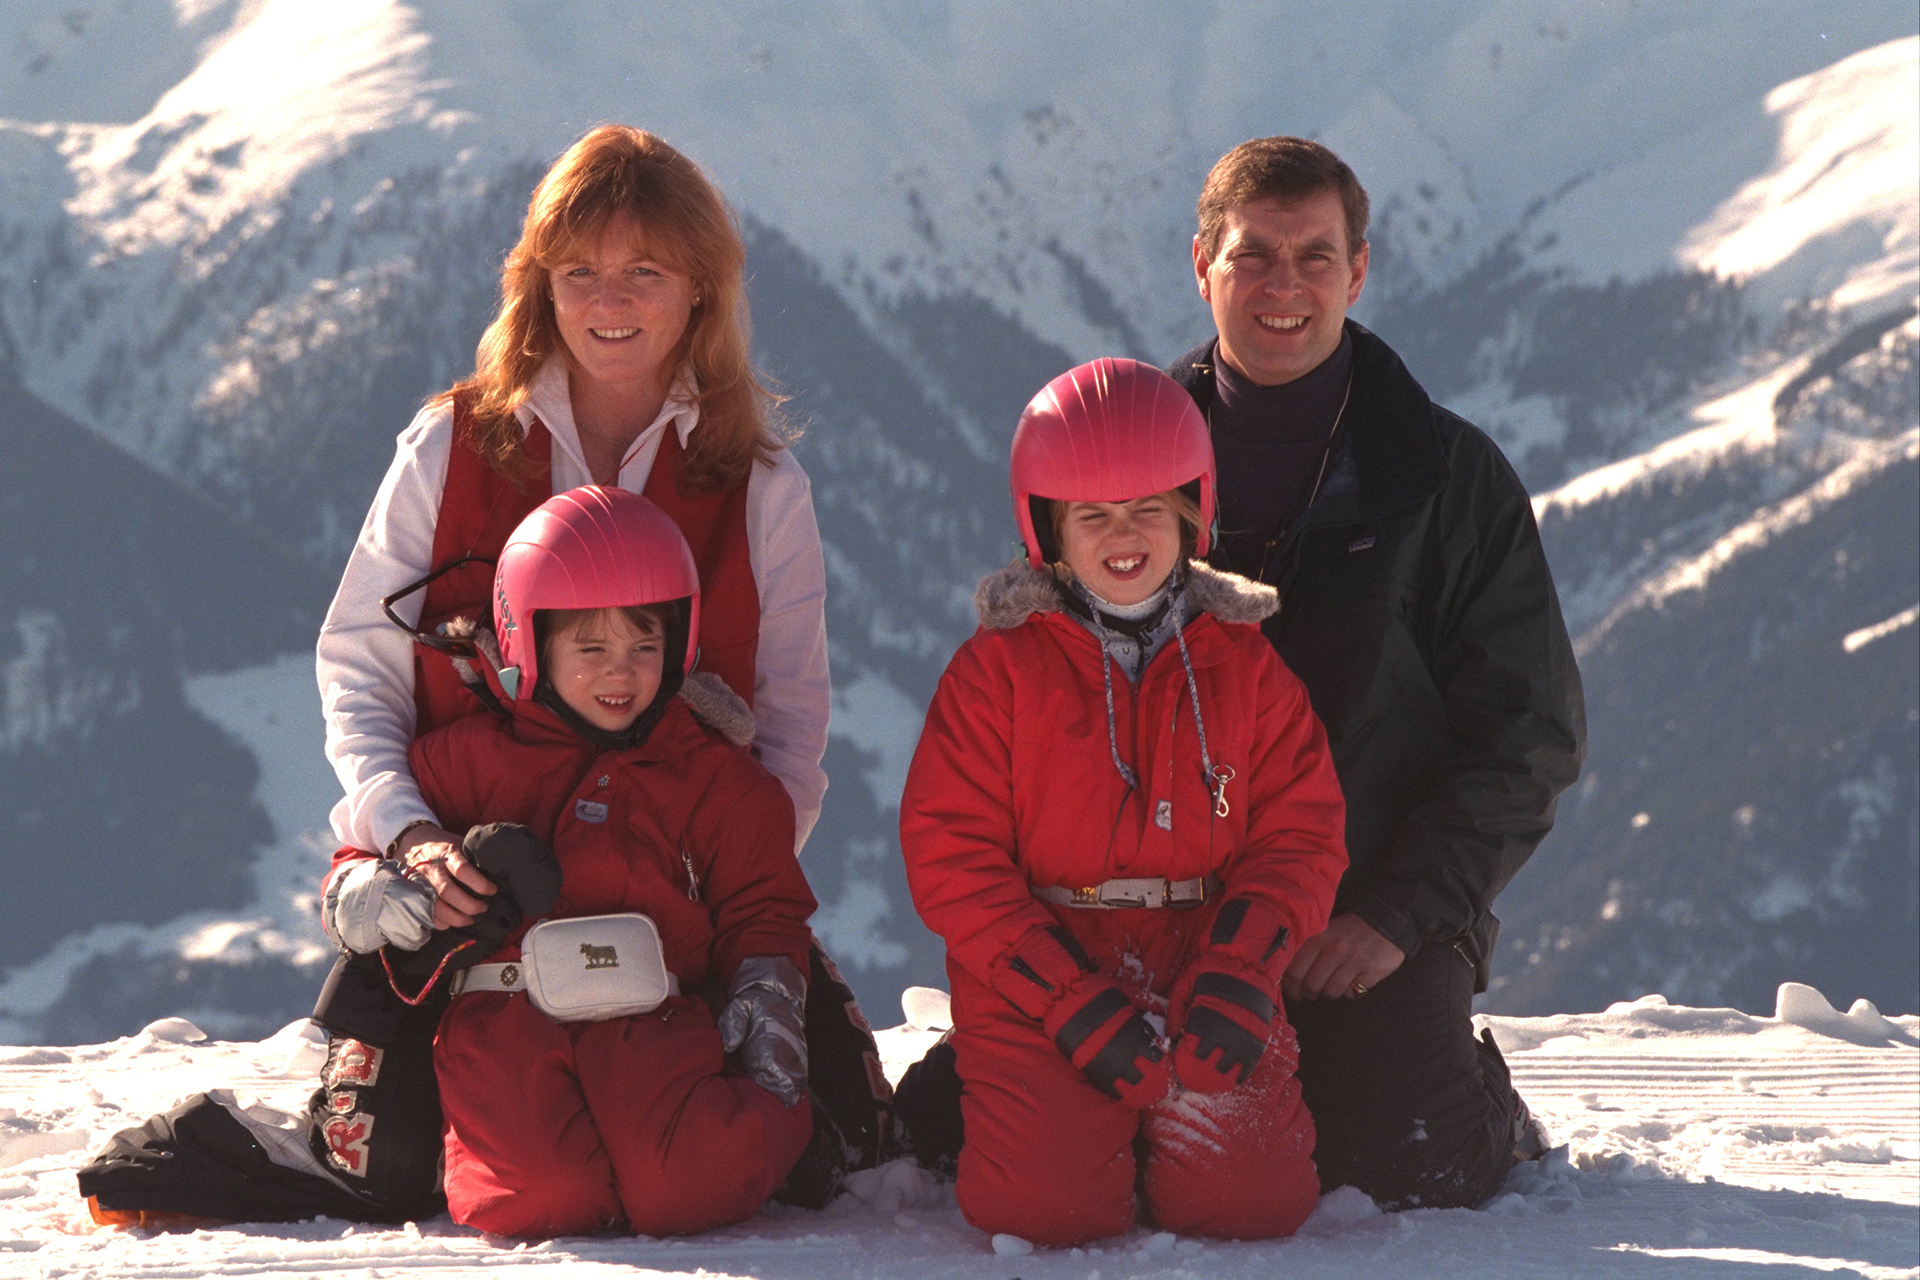 Tiempos felices: el príncipe Andrés, Sarah Ferguson y sus hijos Beatrice y Eugenie participan en deportes de invierno, en febrero de 1997 (Le Segretain/Sygma via Getty Images)